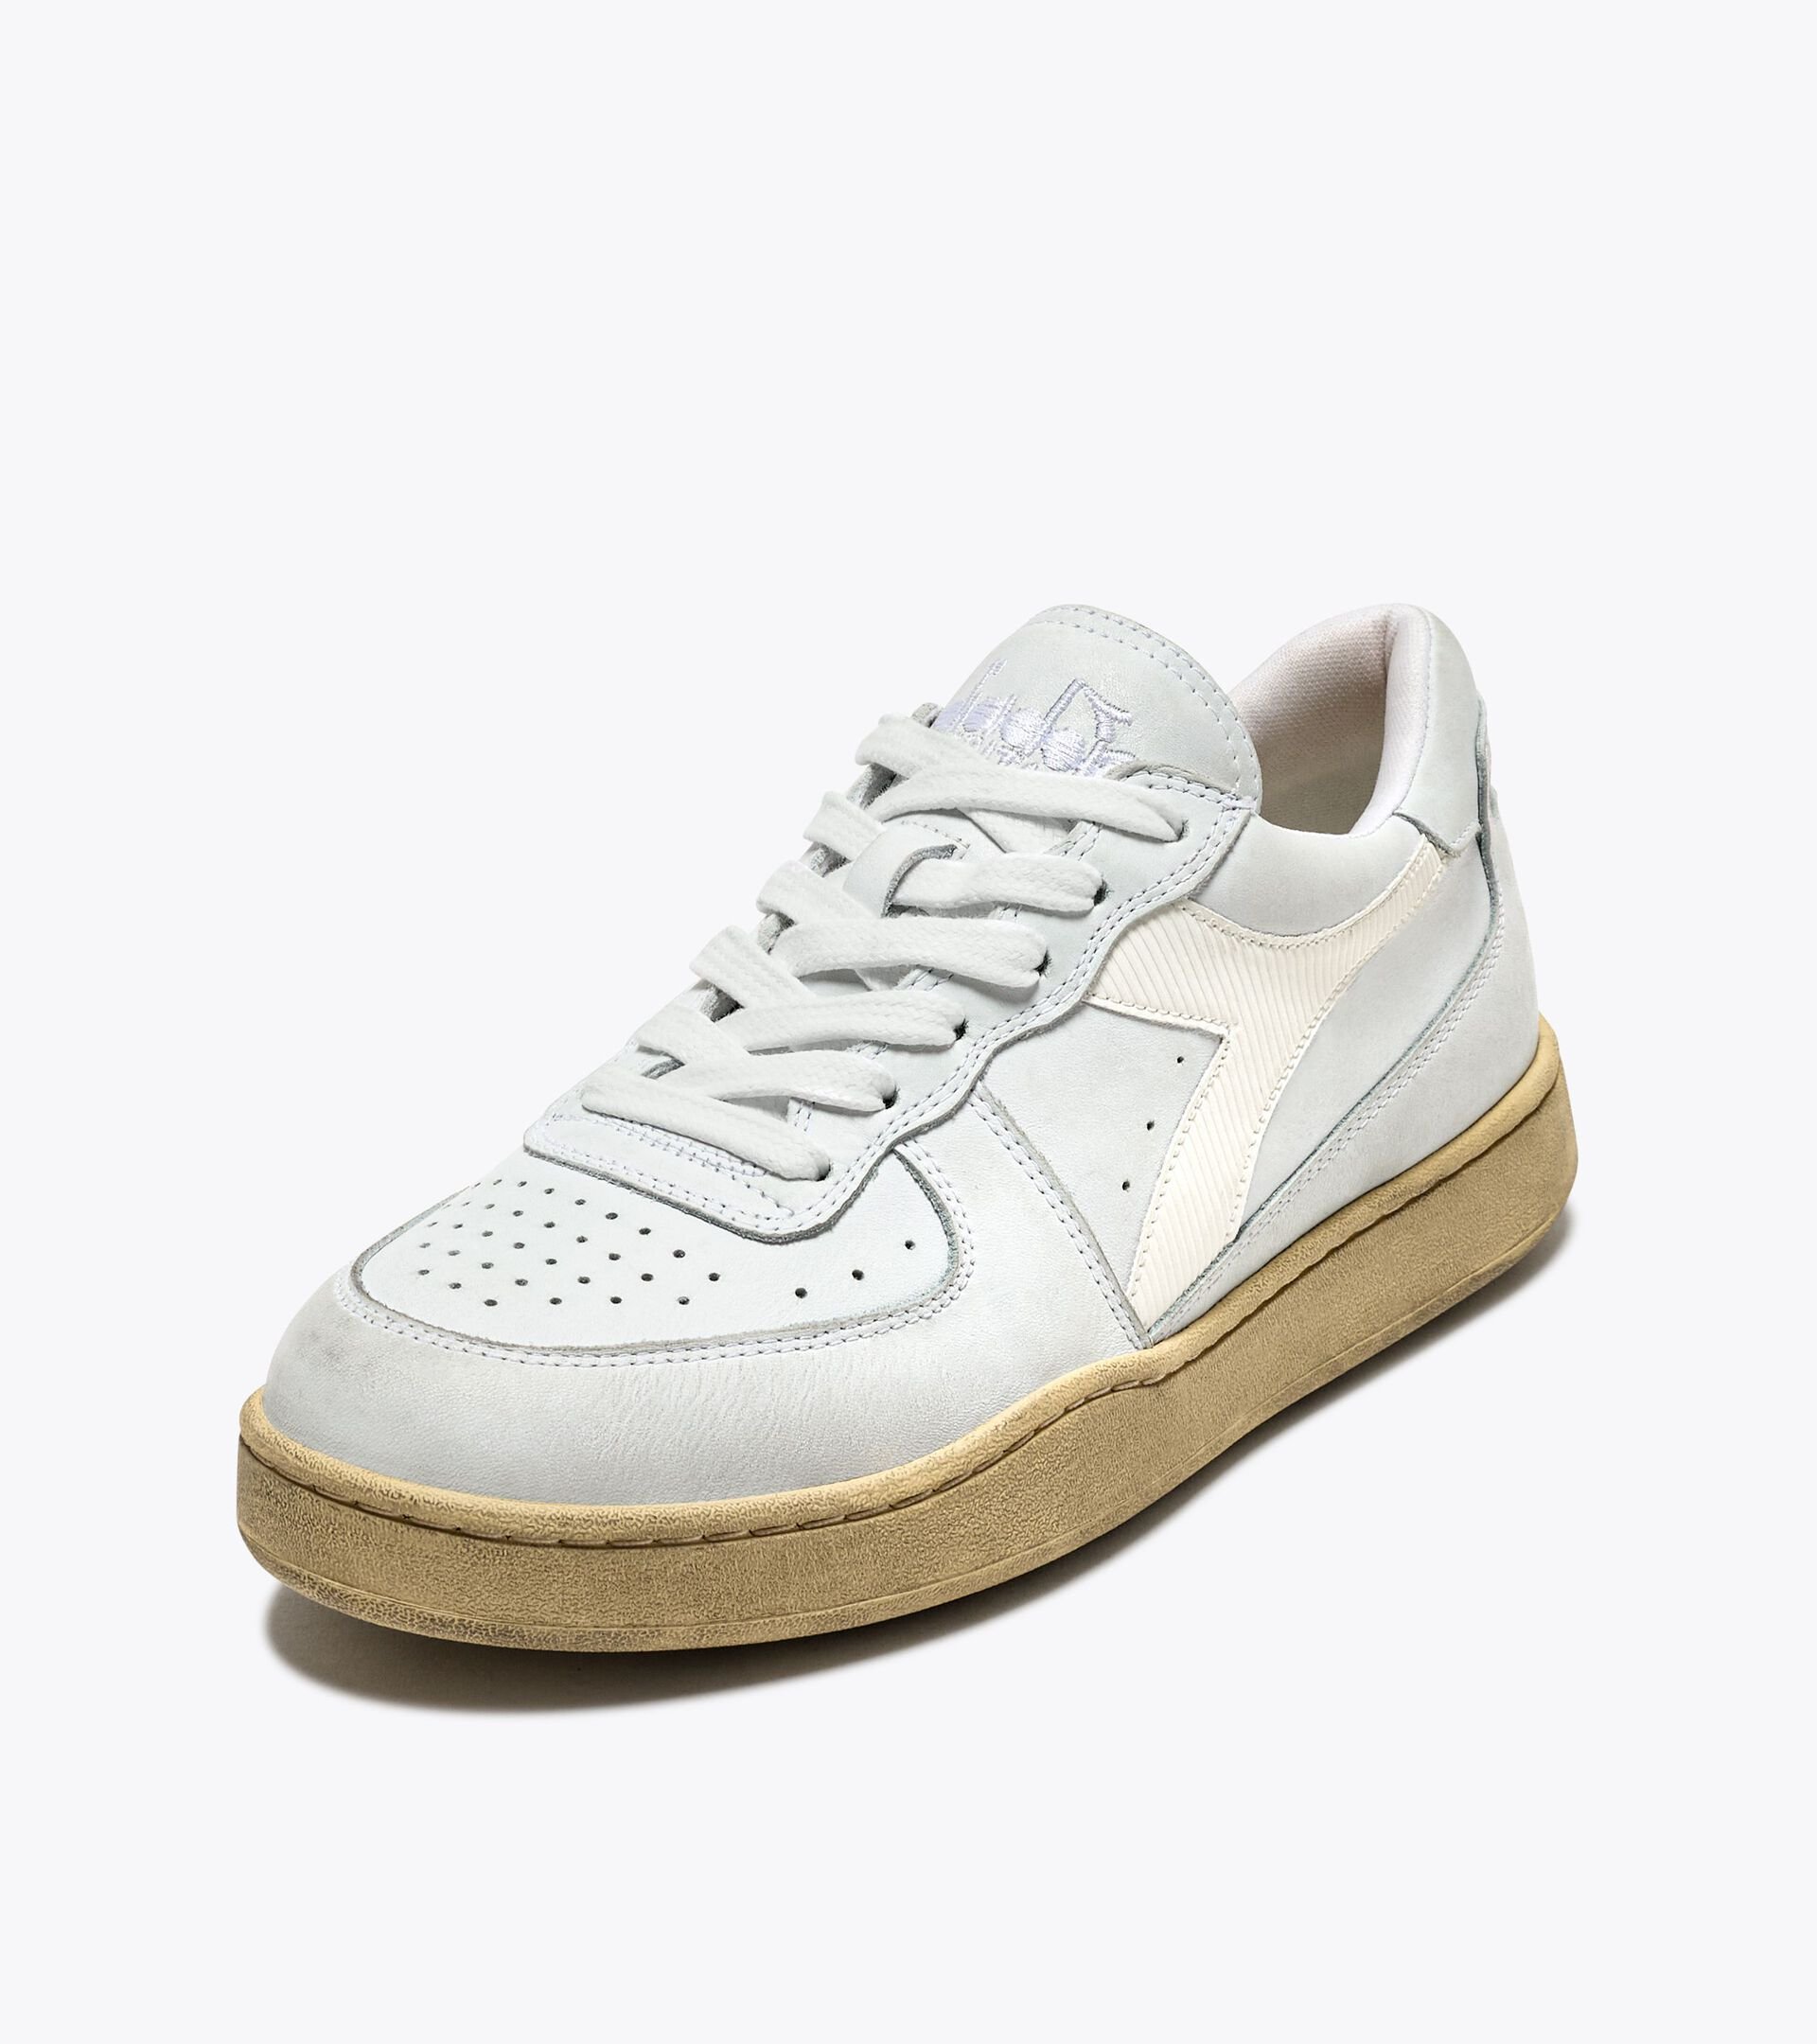 Heritage shoe - Gender Neutral MI BASKET LOW USED WHITE /WHITE - Diadora